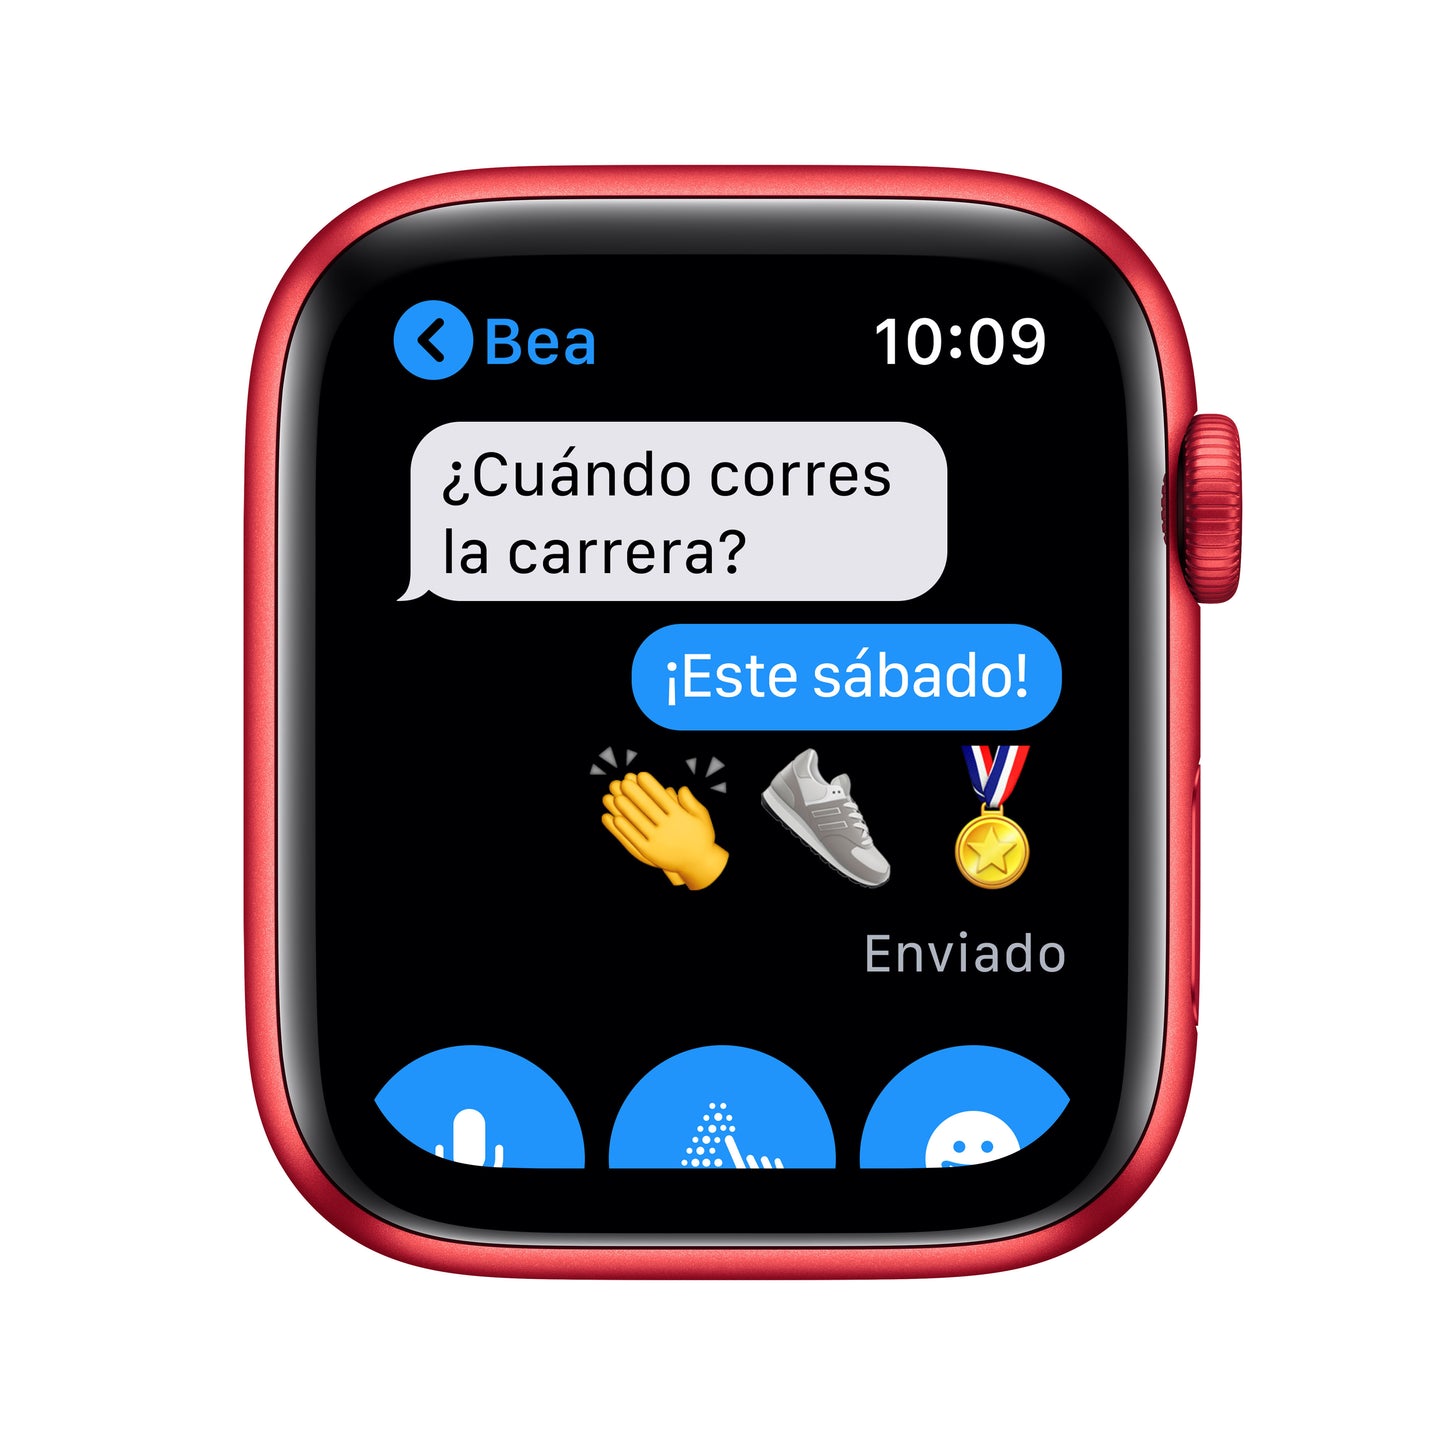 Apple Watch Series 6 (GPS) - Caja de aluminio (PRODUCT)RED de 44 mm - Correa deportiva (PRODUCT)RED - Talla única